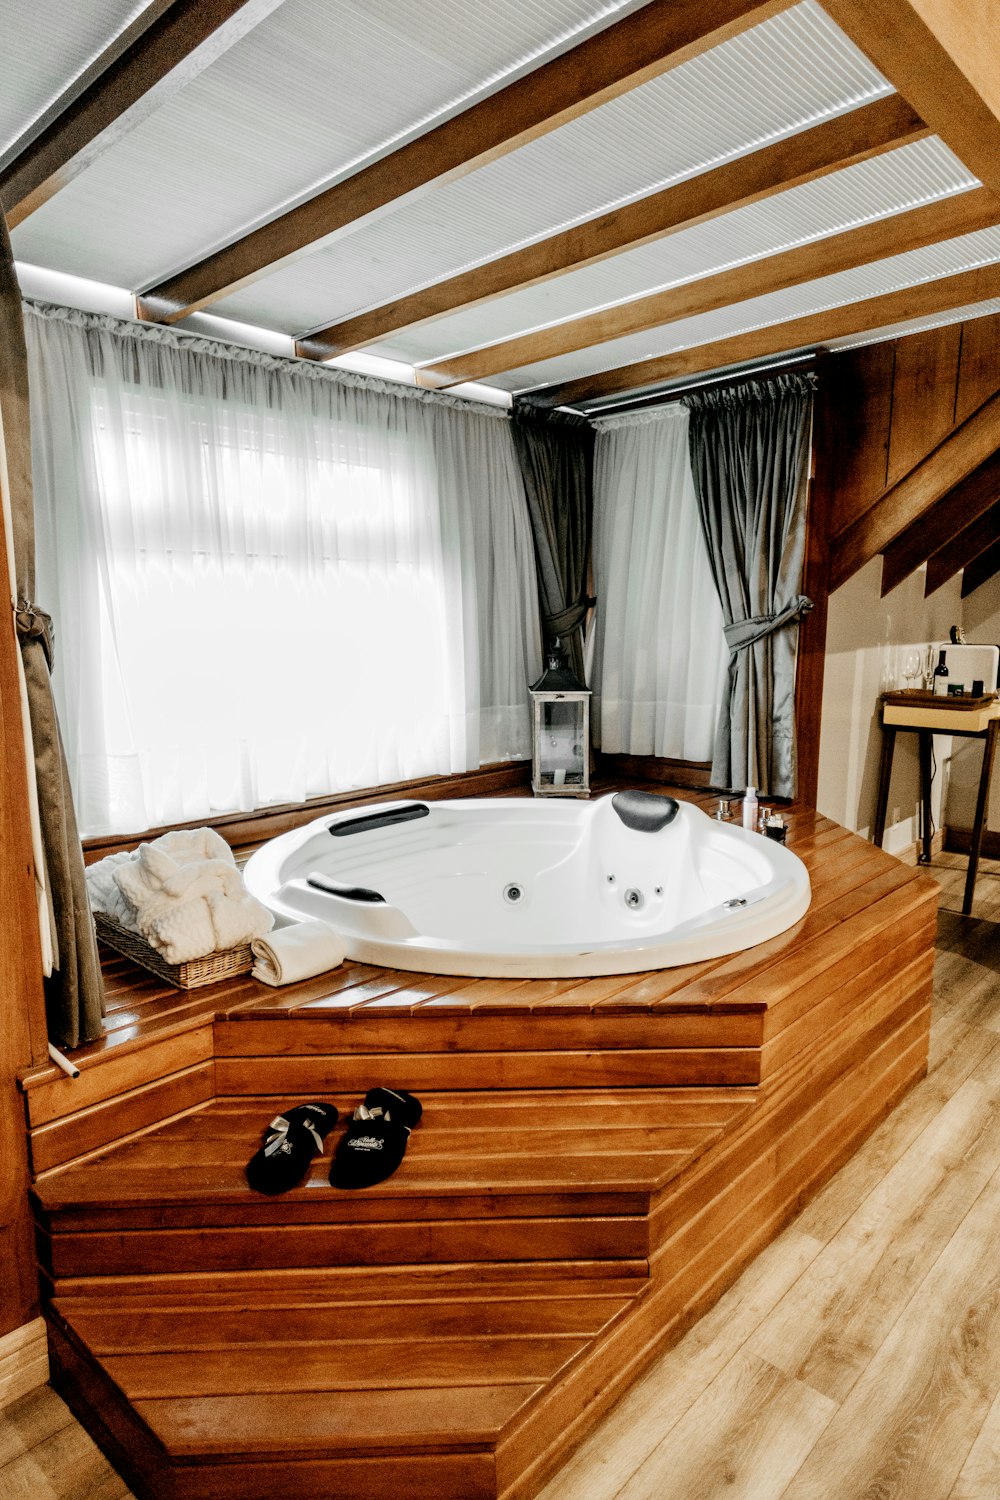 Bañera de hidromasaje redonda con estructura de madera marrón